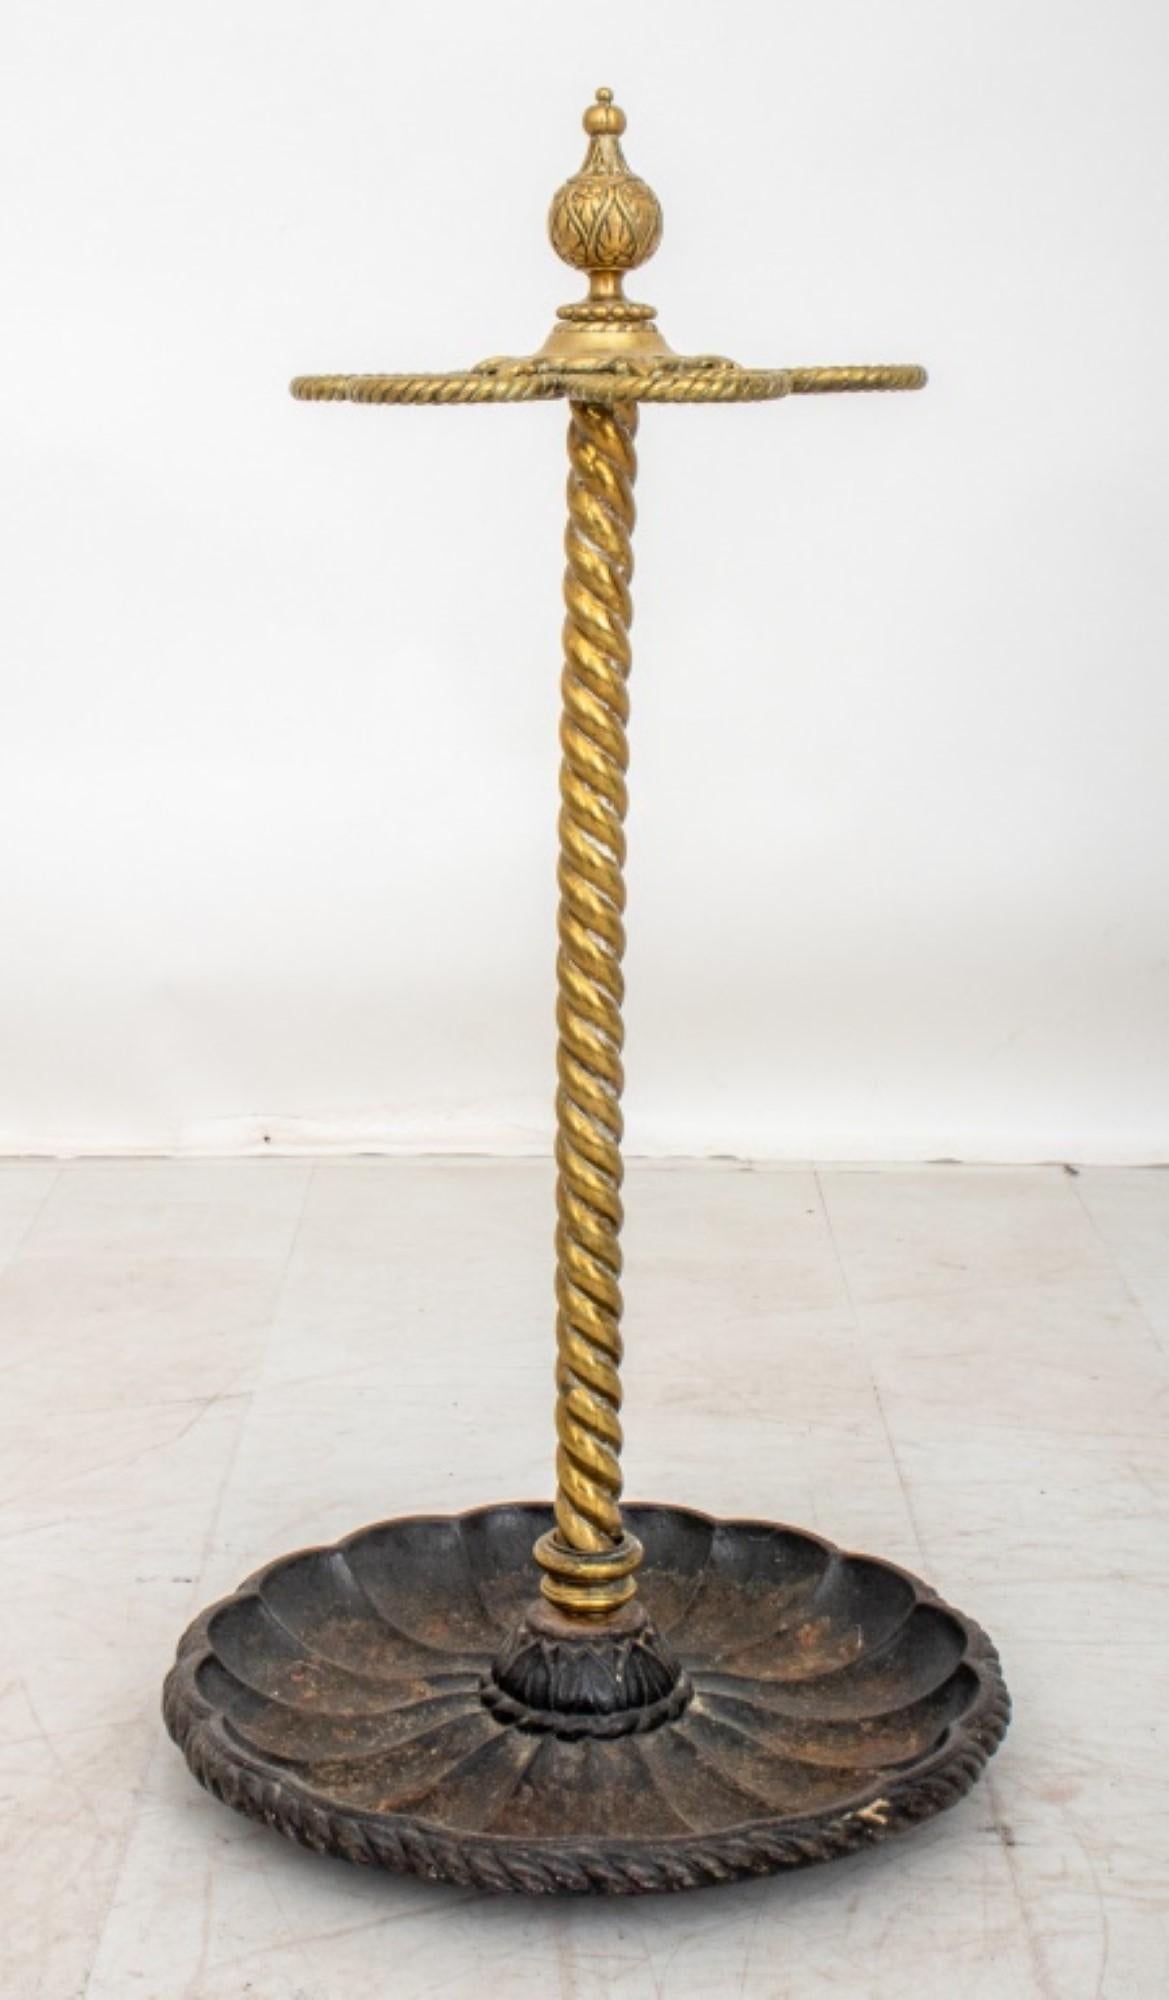 Der edwardianische Stock- und Schirmständer aus Messing und Gusseisen, aus der Zeit um 1900,
Hat ungefähre Abmessungen von 30 Zoll in der Höhe und 15 Zoll im Durchmesser.
 Dieses Stück dient als Stock- oder Schirmständer und weist in seinem Design